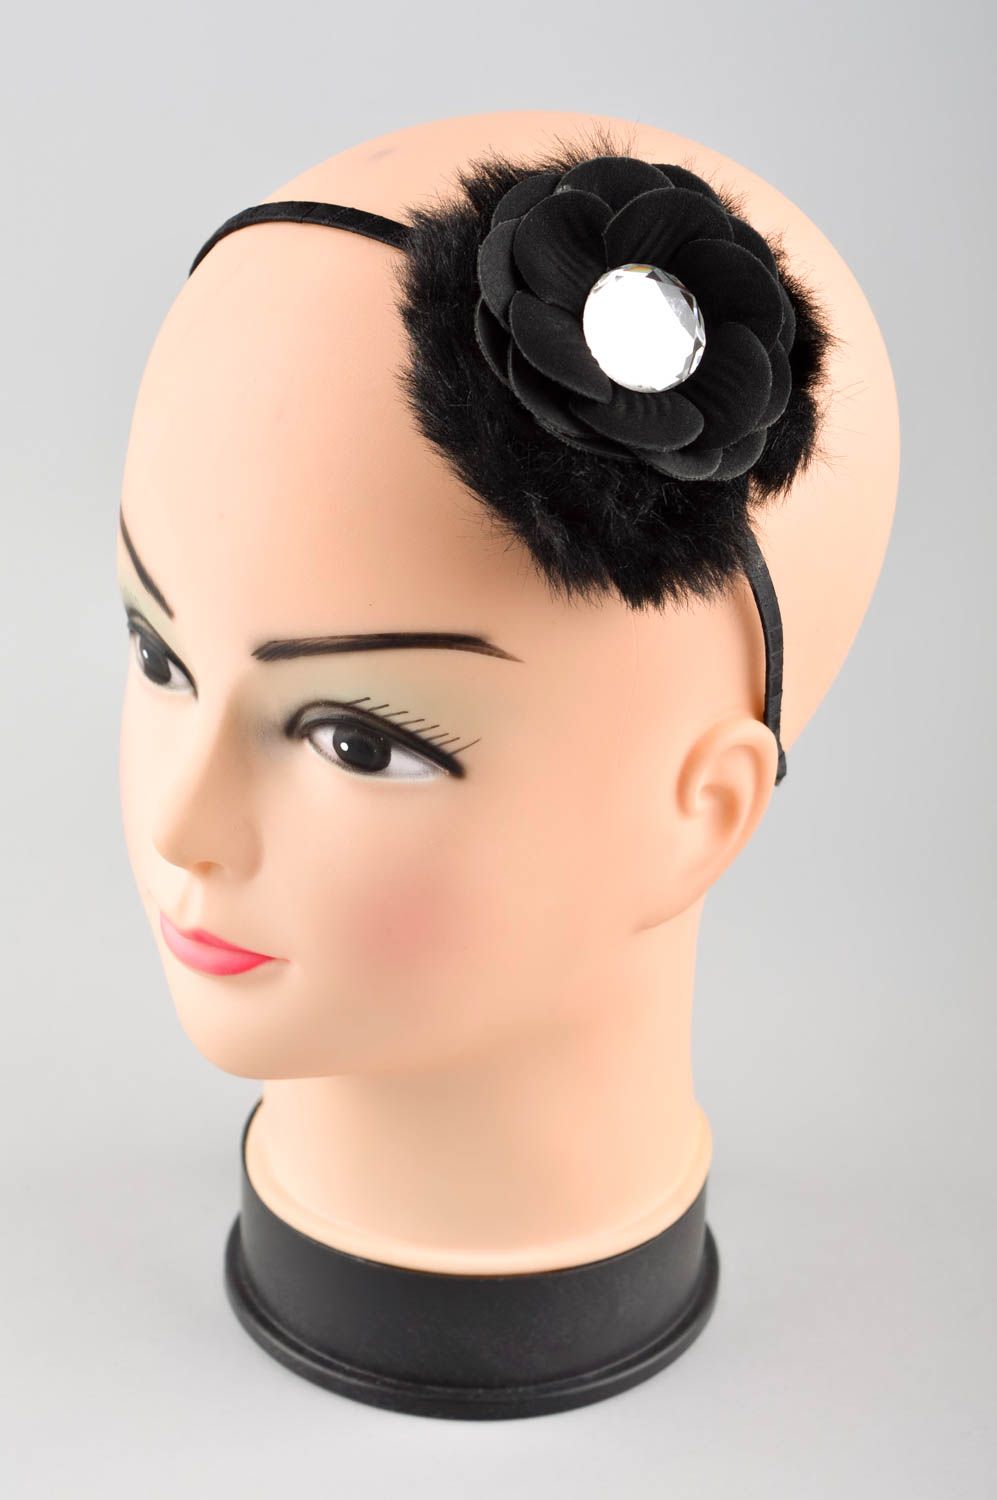 Аксессуар для волос хэнд мэйд обруч на голову с цветком женский аксессуар фото 1